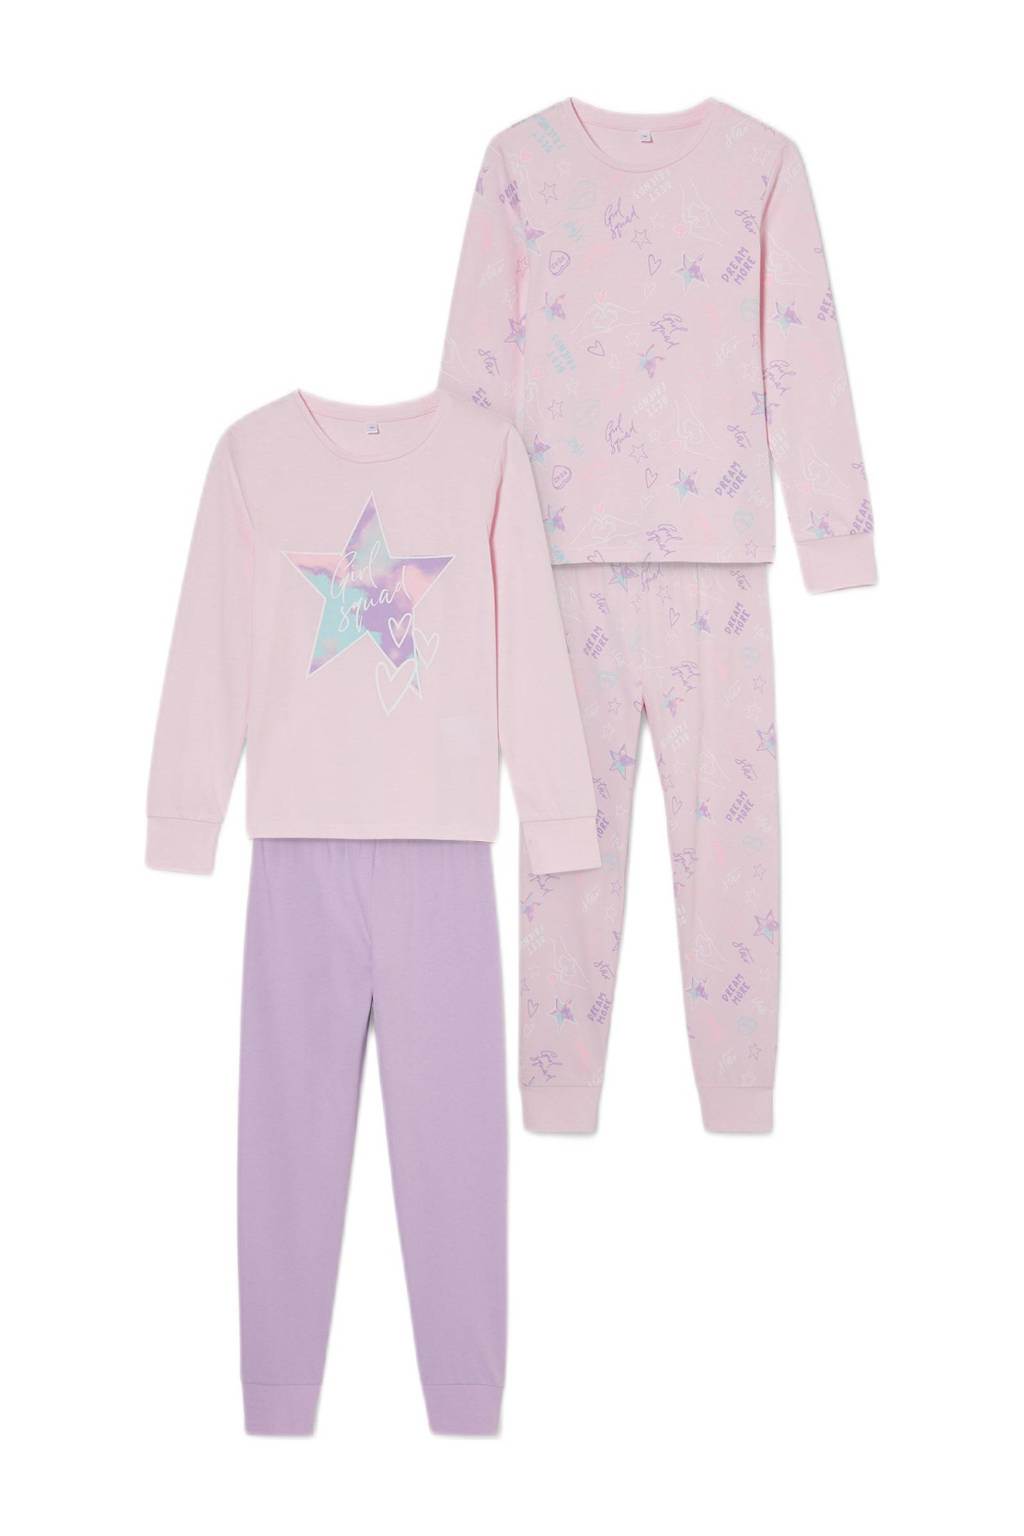 C&A pyjama - set van 2 roze/lila